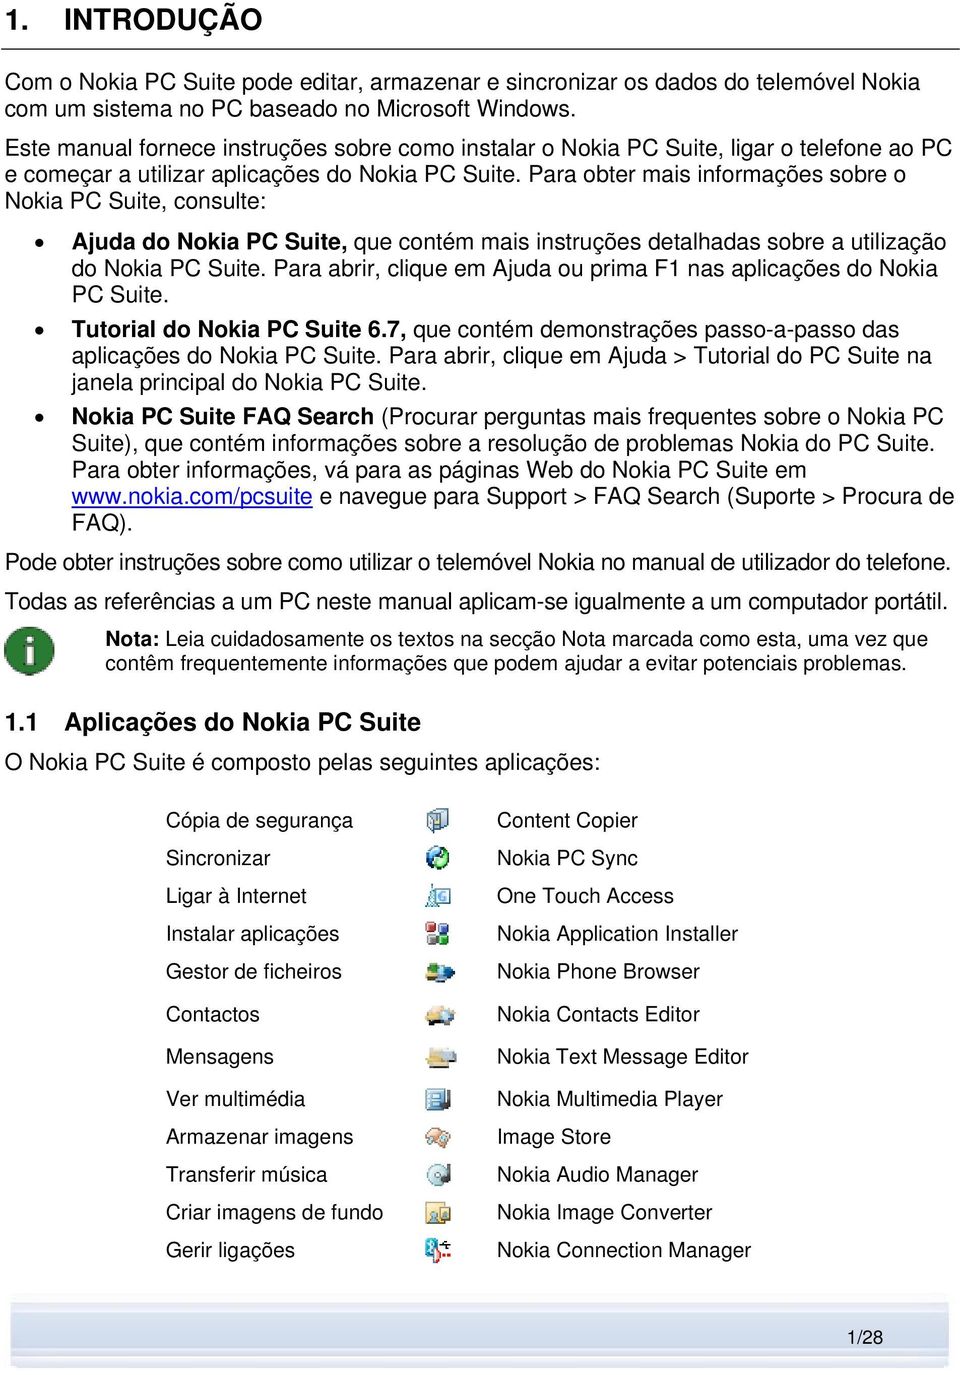 Para obter mais informações sobre o Nokia PC Suite, consulte: Ajuda do Nokia PC Suite, que contém mais instruções detalhadas sobre a utilização do Nokia PC Suite.